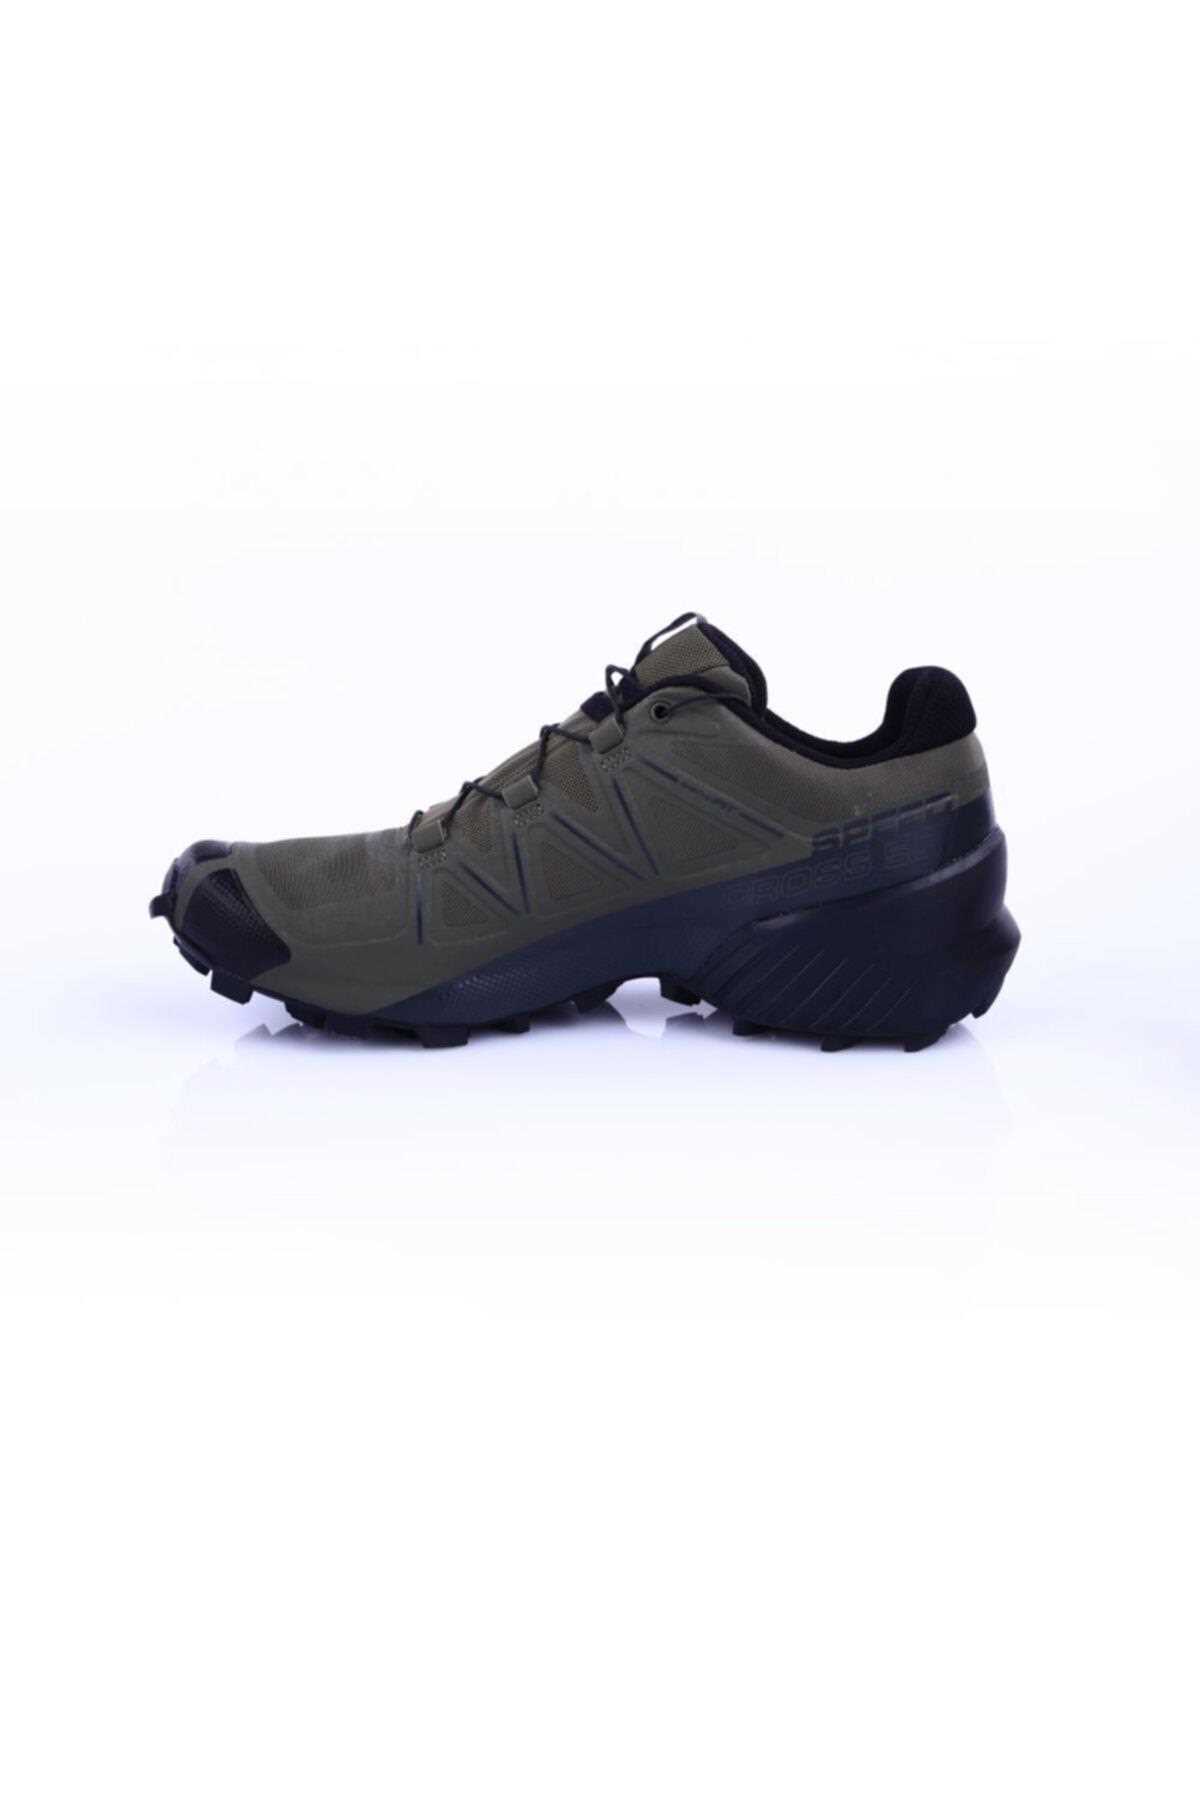 فروش کفش کوهنوردی مردانه ترک مجلسی برند Salomon رنگ مشکی کد ty41678465